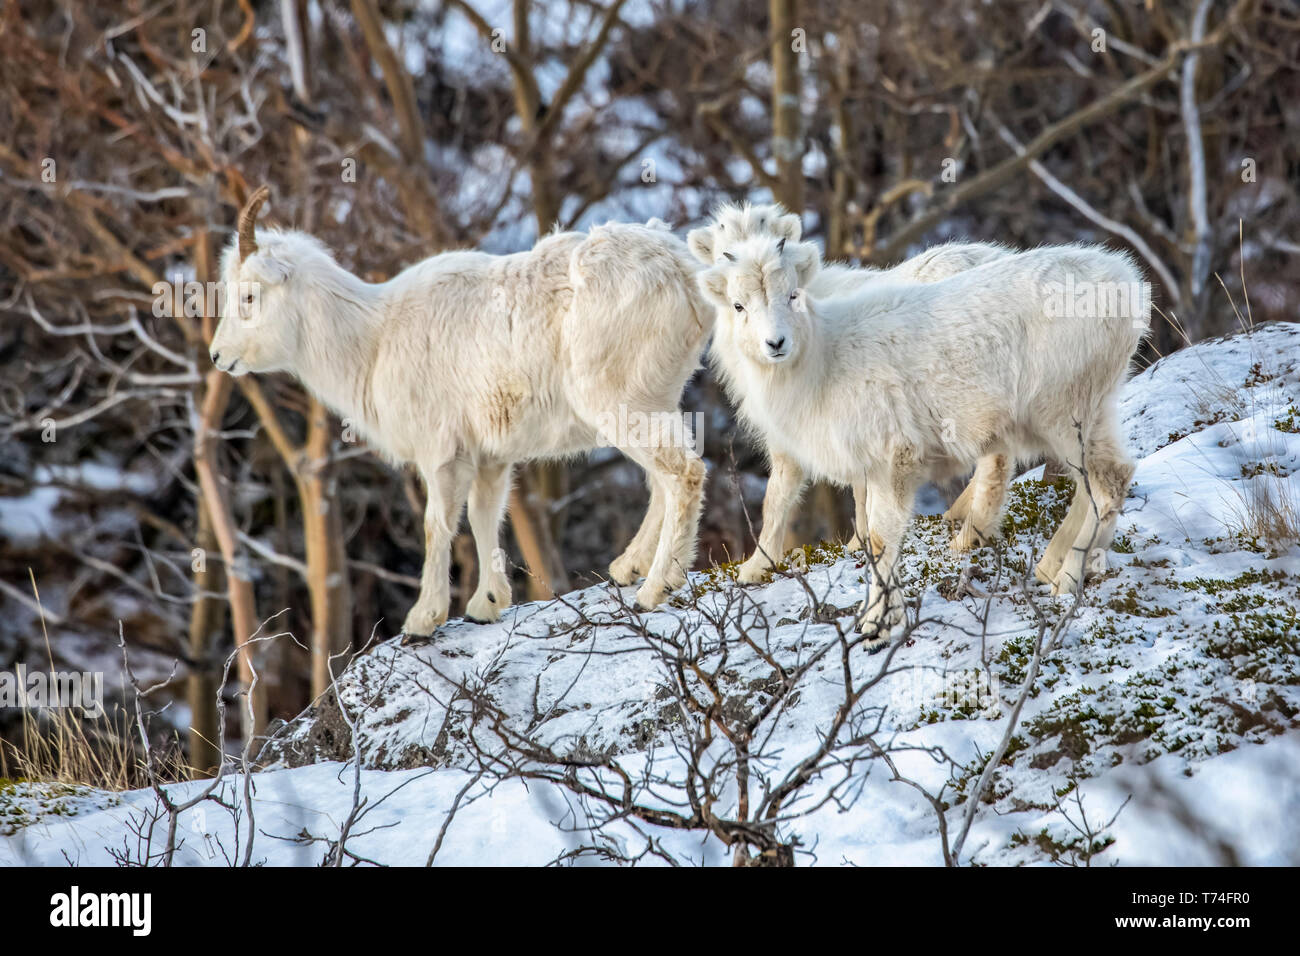 Moutons Dall (Ovis dalli) brebis et agneaux dans la région de Windy point à l'extérieur d'Anchorage près de MP 107 de l'autoroute Seward, un lieu commun pour voir... Banque D'Images